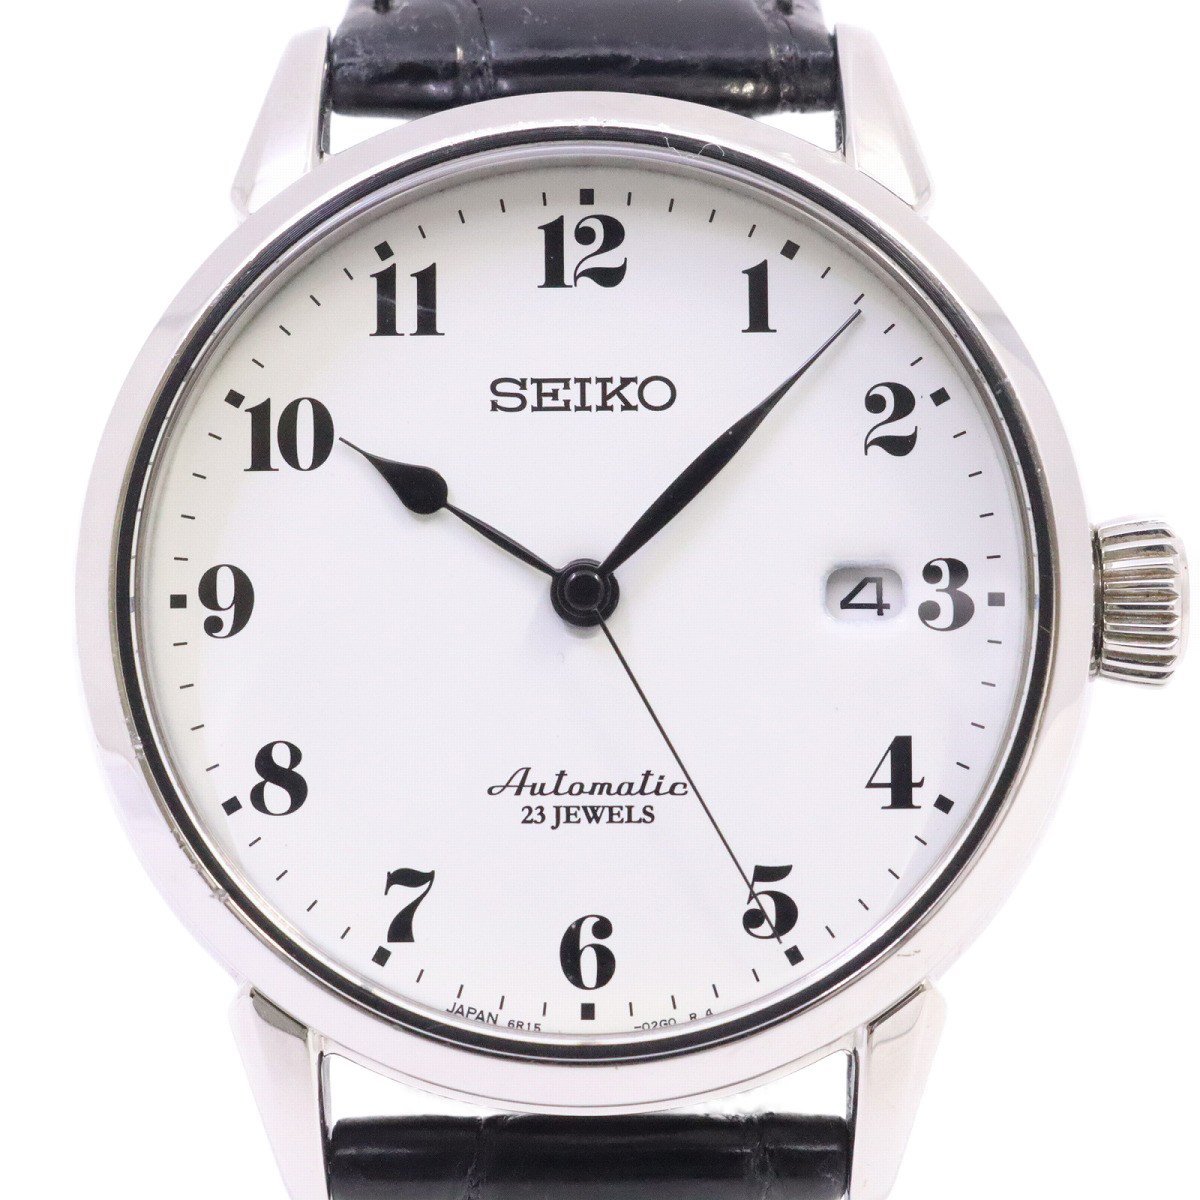 SEIKO セイコー プレザージュ メカニカル 自動巻き メンズ 腕時計